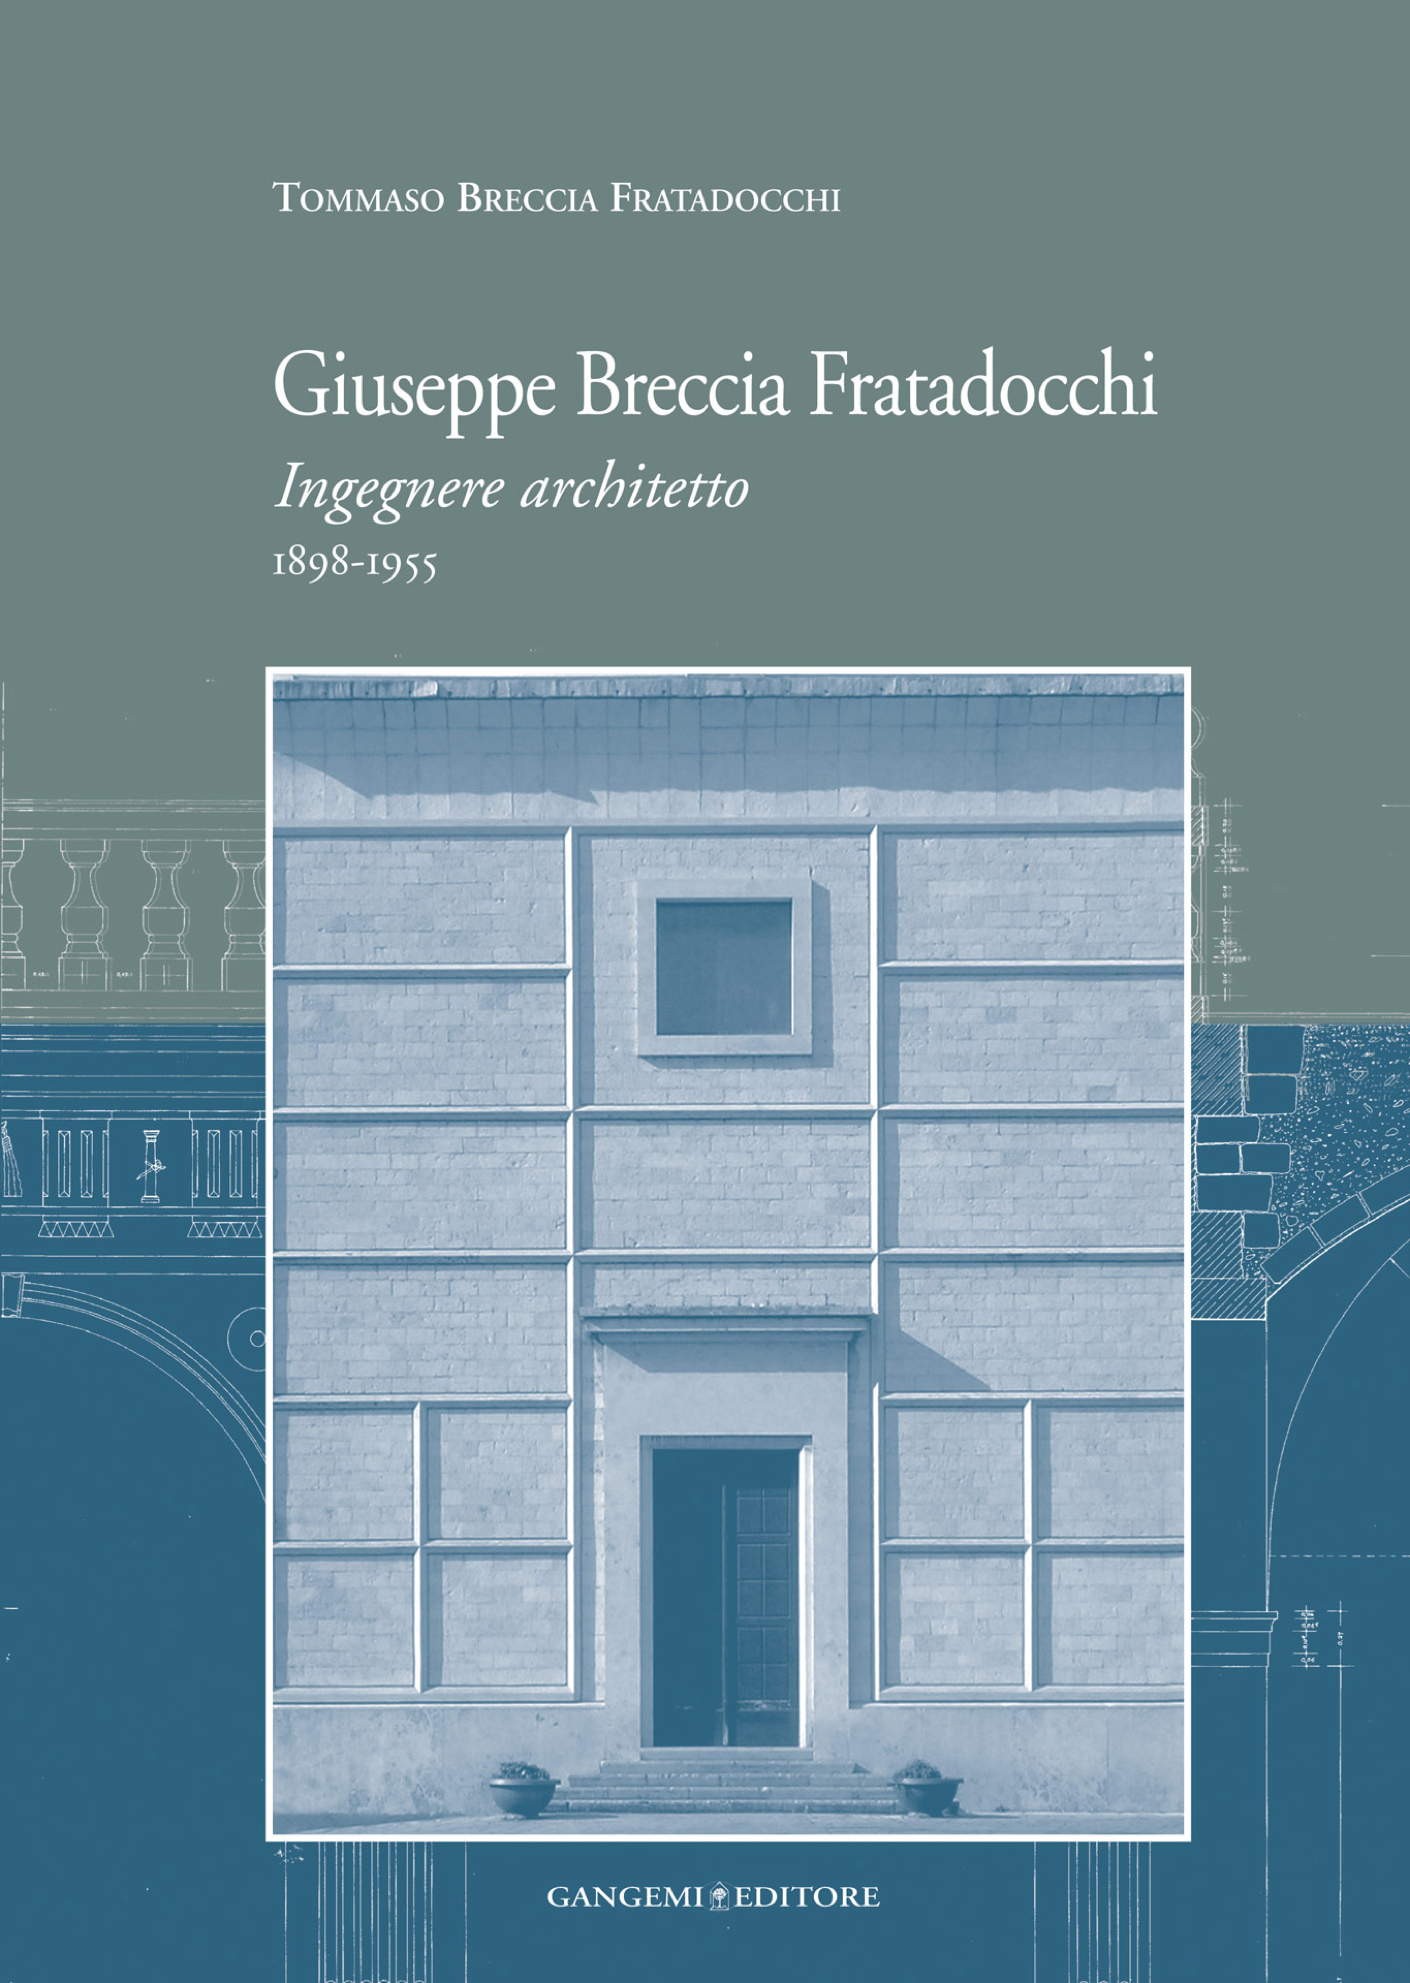 Giuseppe Breccia Fratadocchi - Librerie.coop